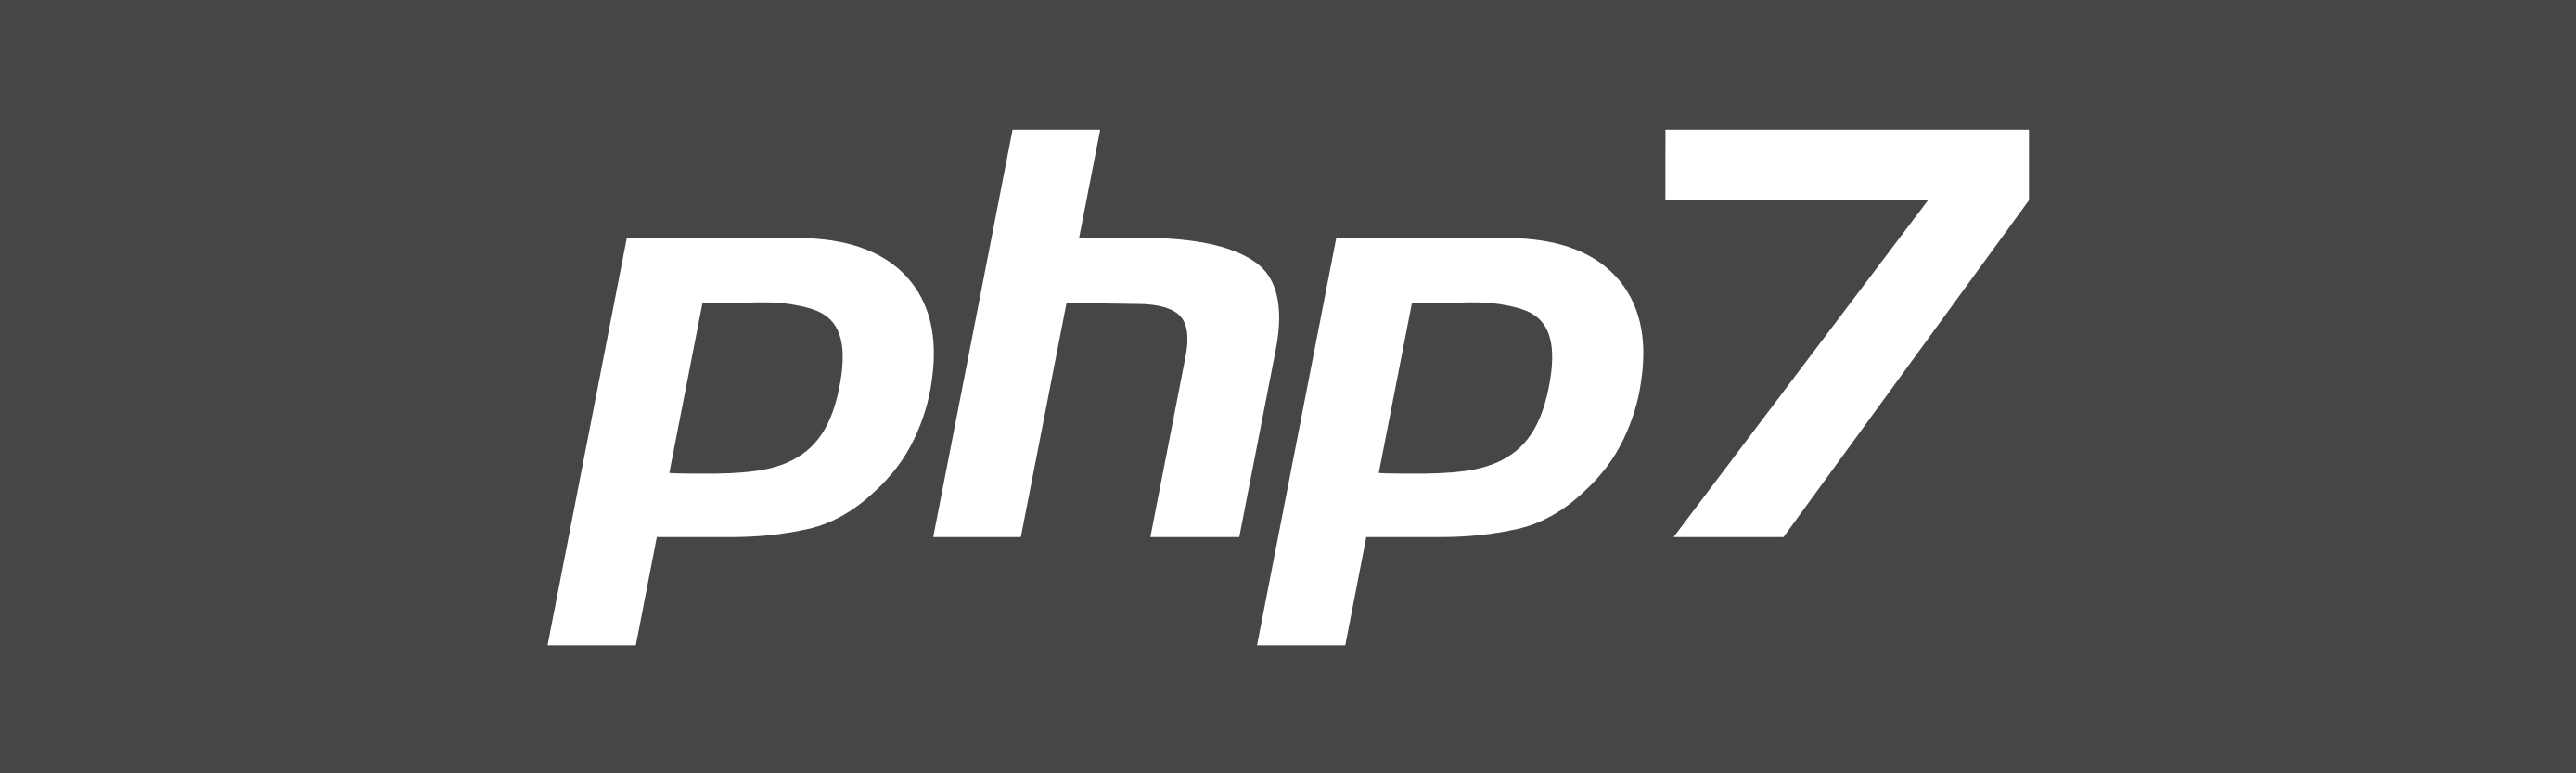 php7 logo